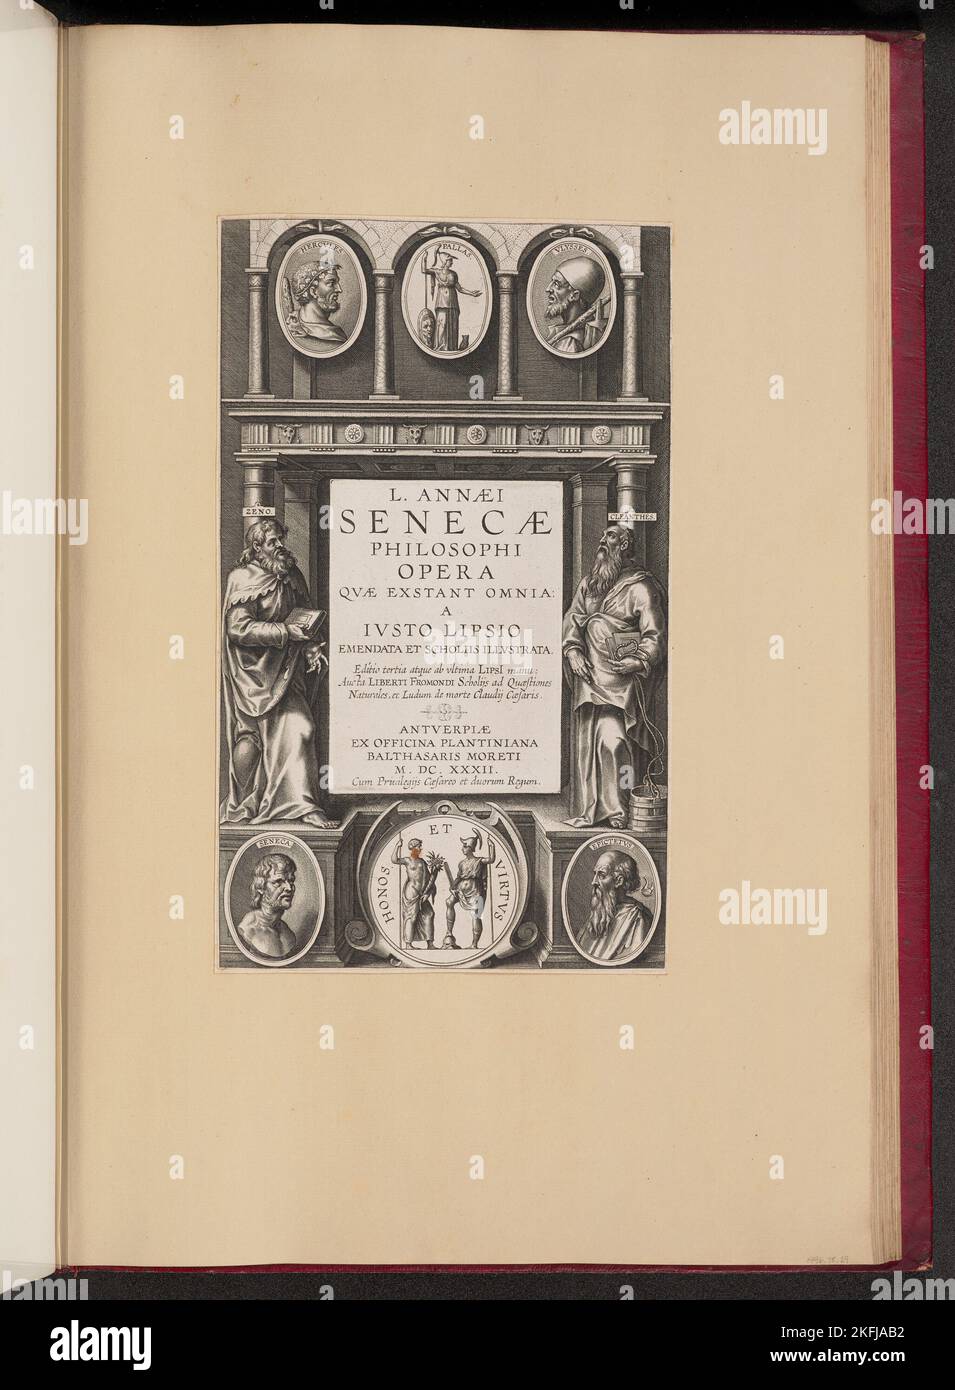 Pagina del titolo di L. Annaei Senecae Philosophi Opera Qvae Exstant Omnia a Ivisto Lipsio, 1632. Foto Stock